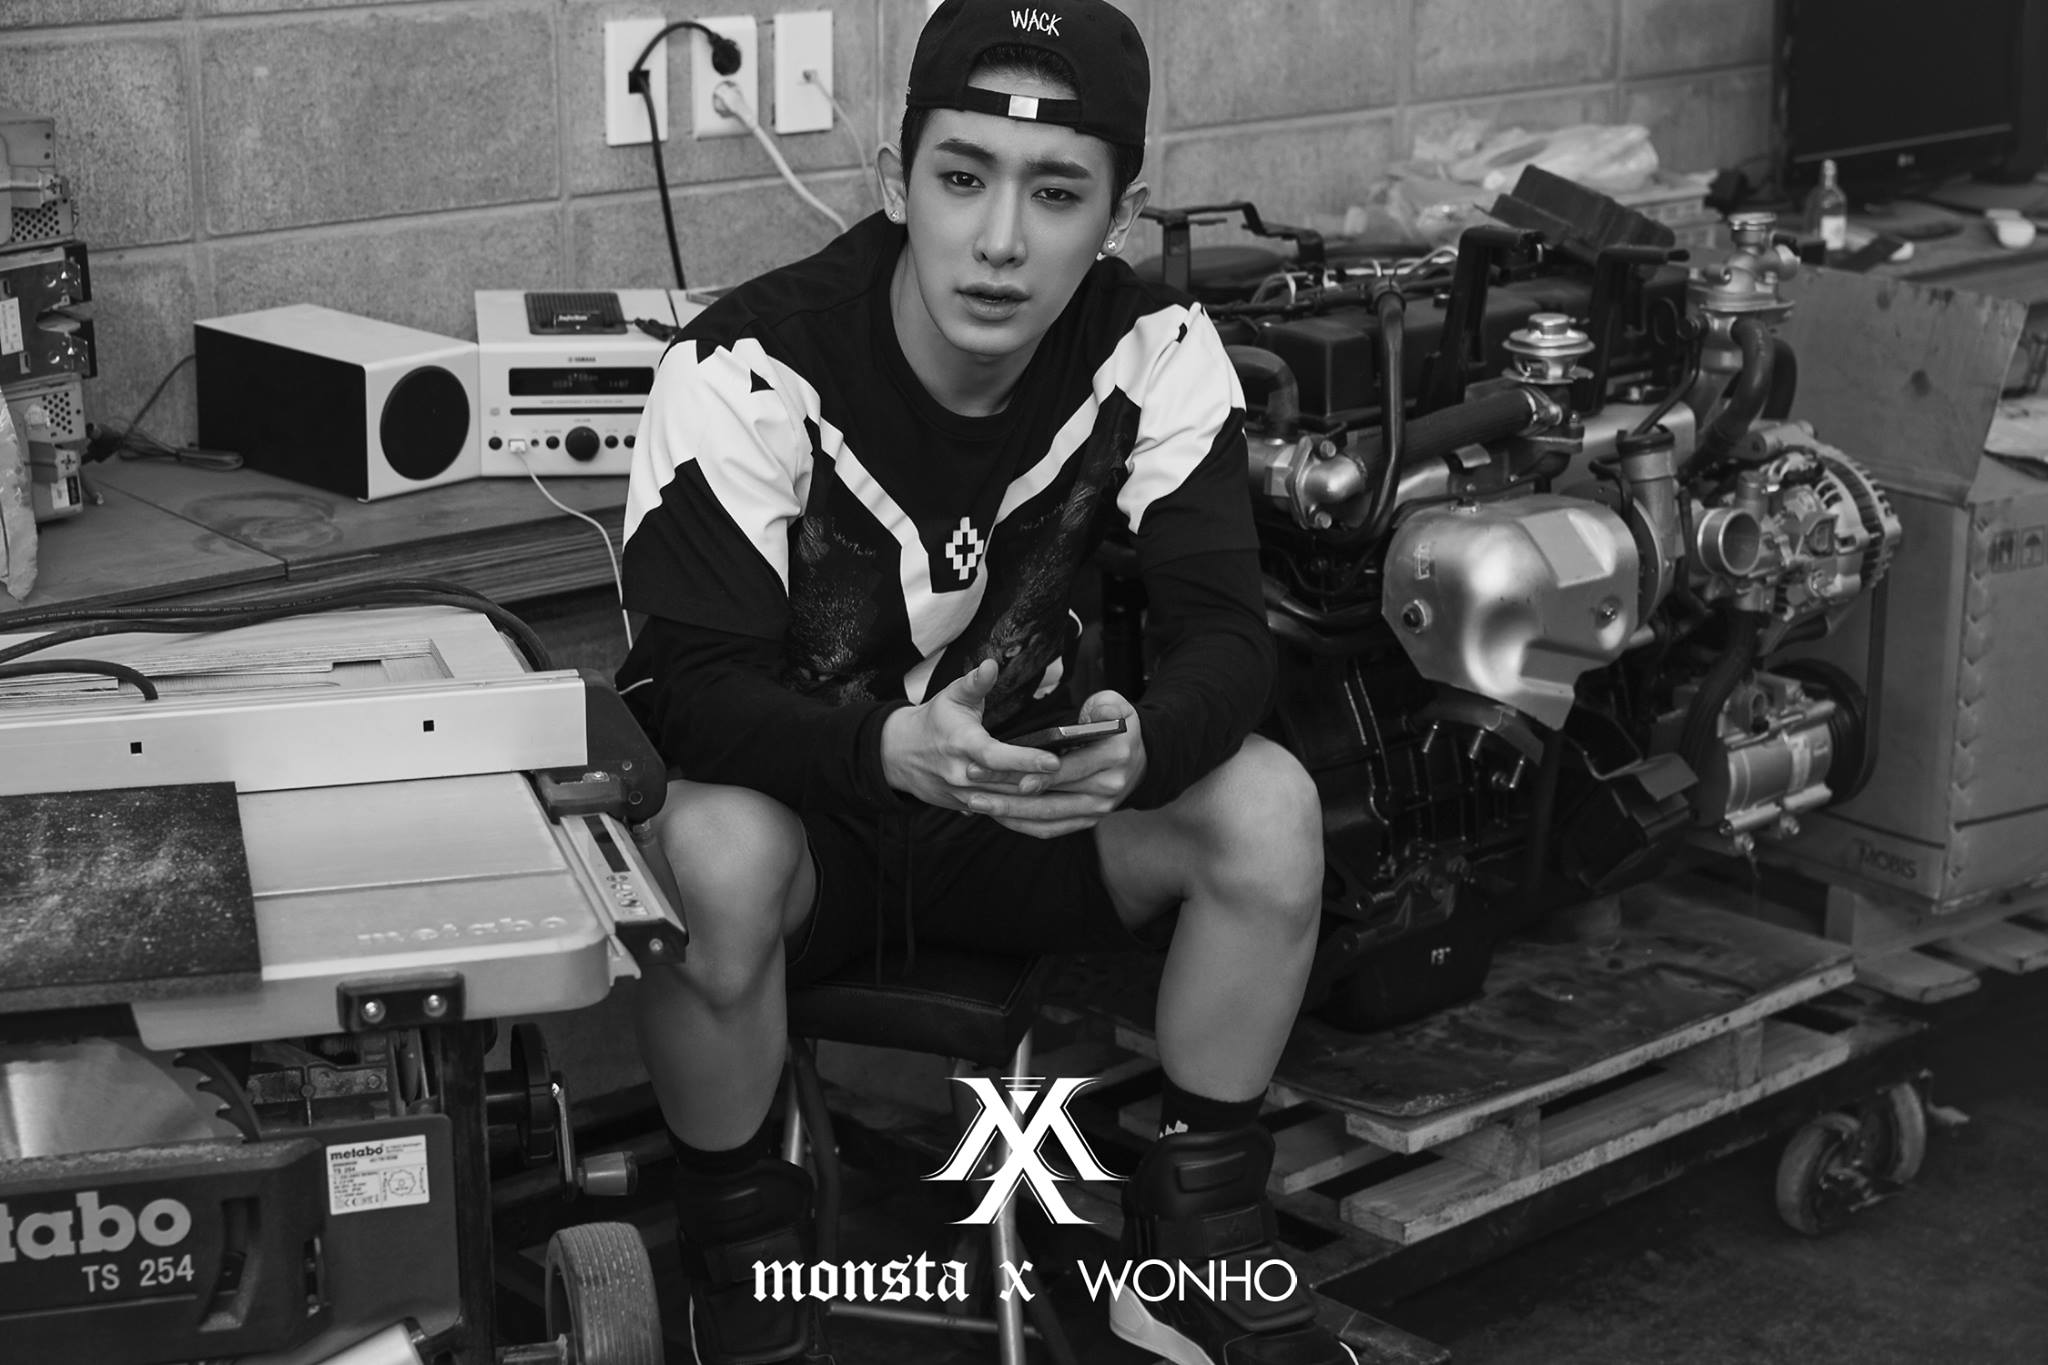 MONSTA X Wonho